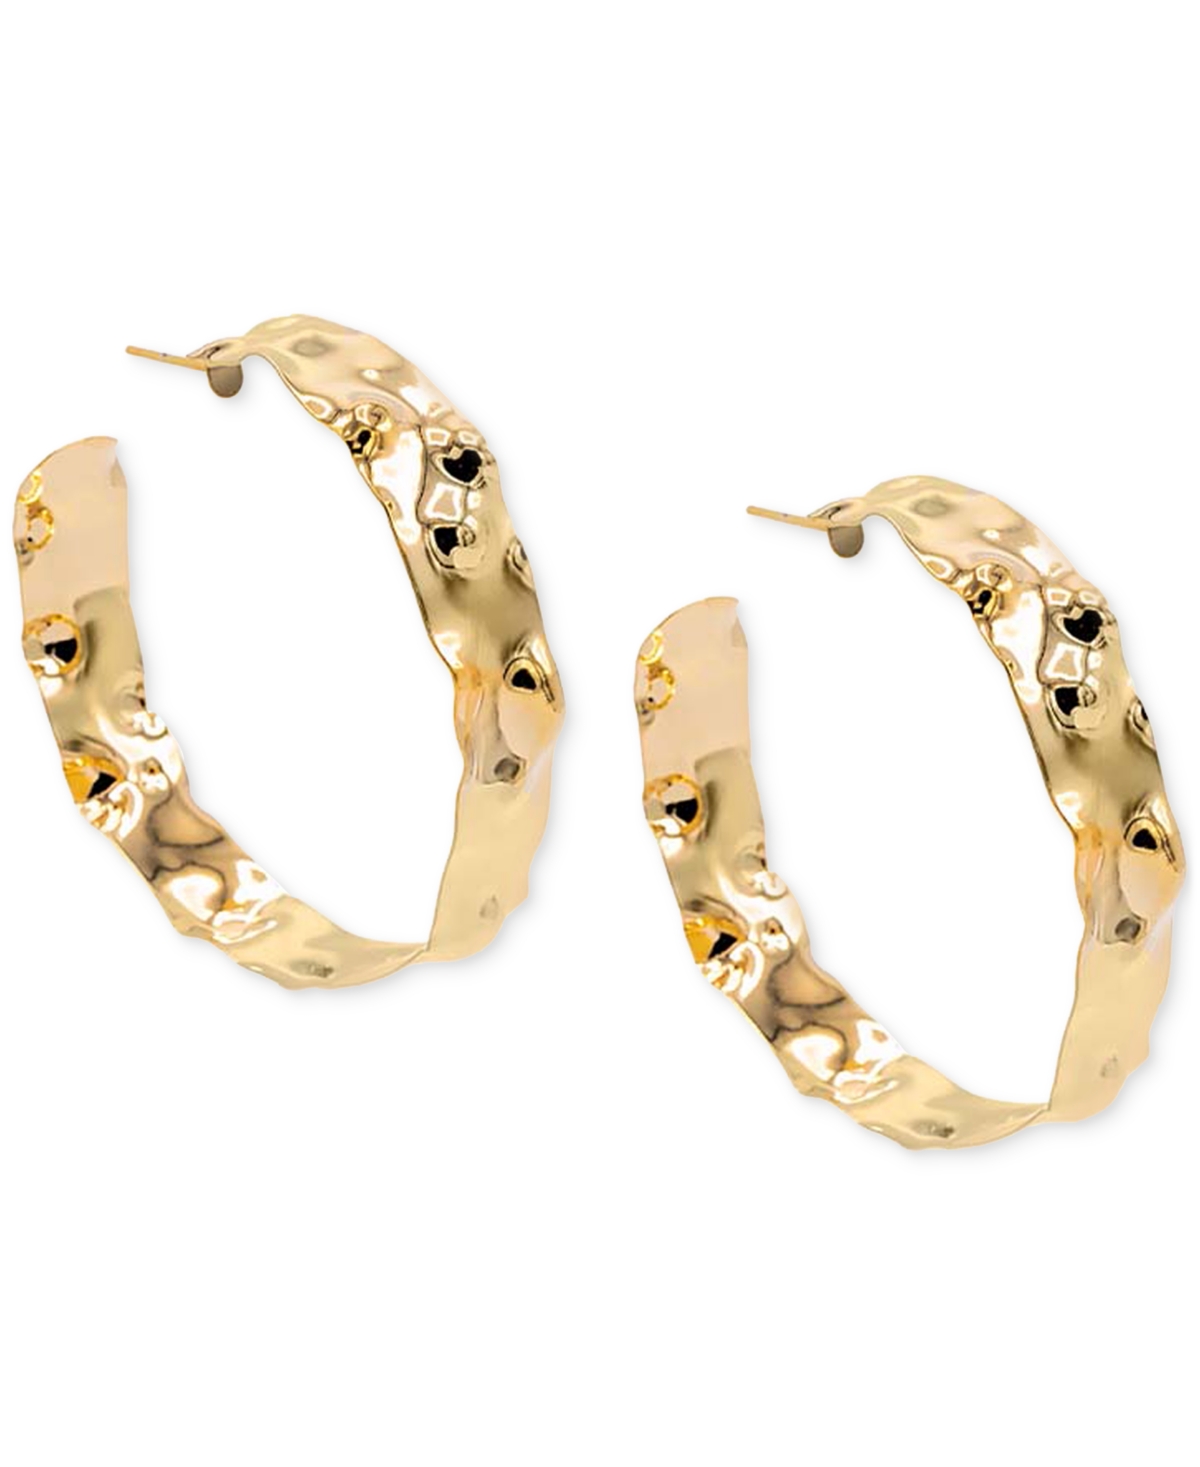 By Adina Eden 14k Gold-plated Medium Vintage Dented Hoop Earrings, 1.96"